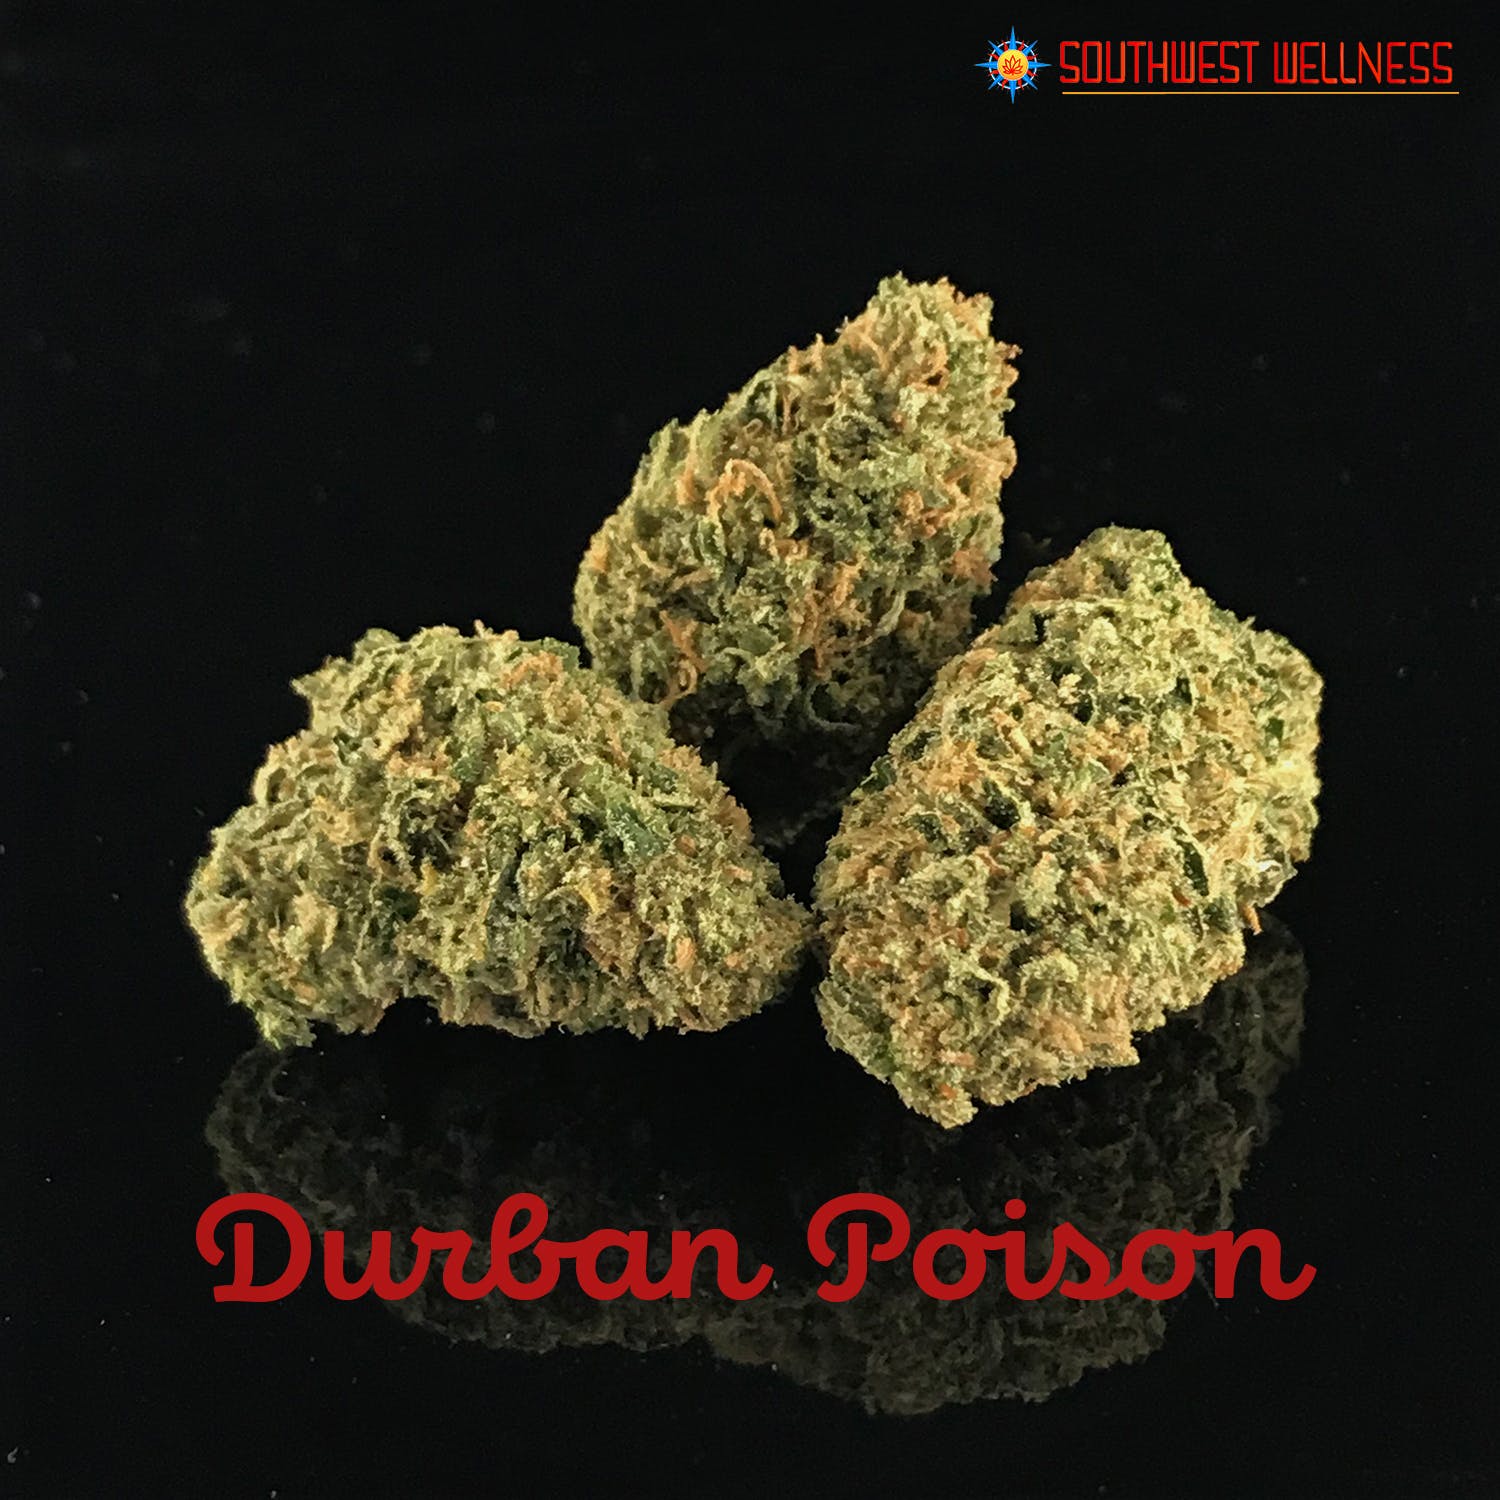 Durban Poison - 22.1% THC